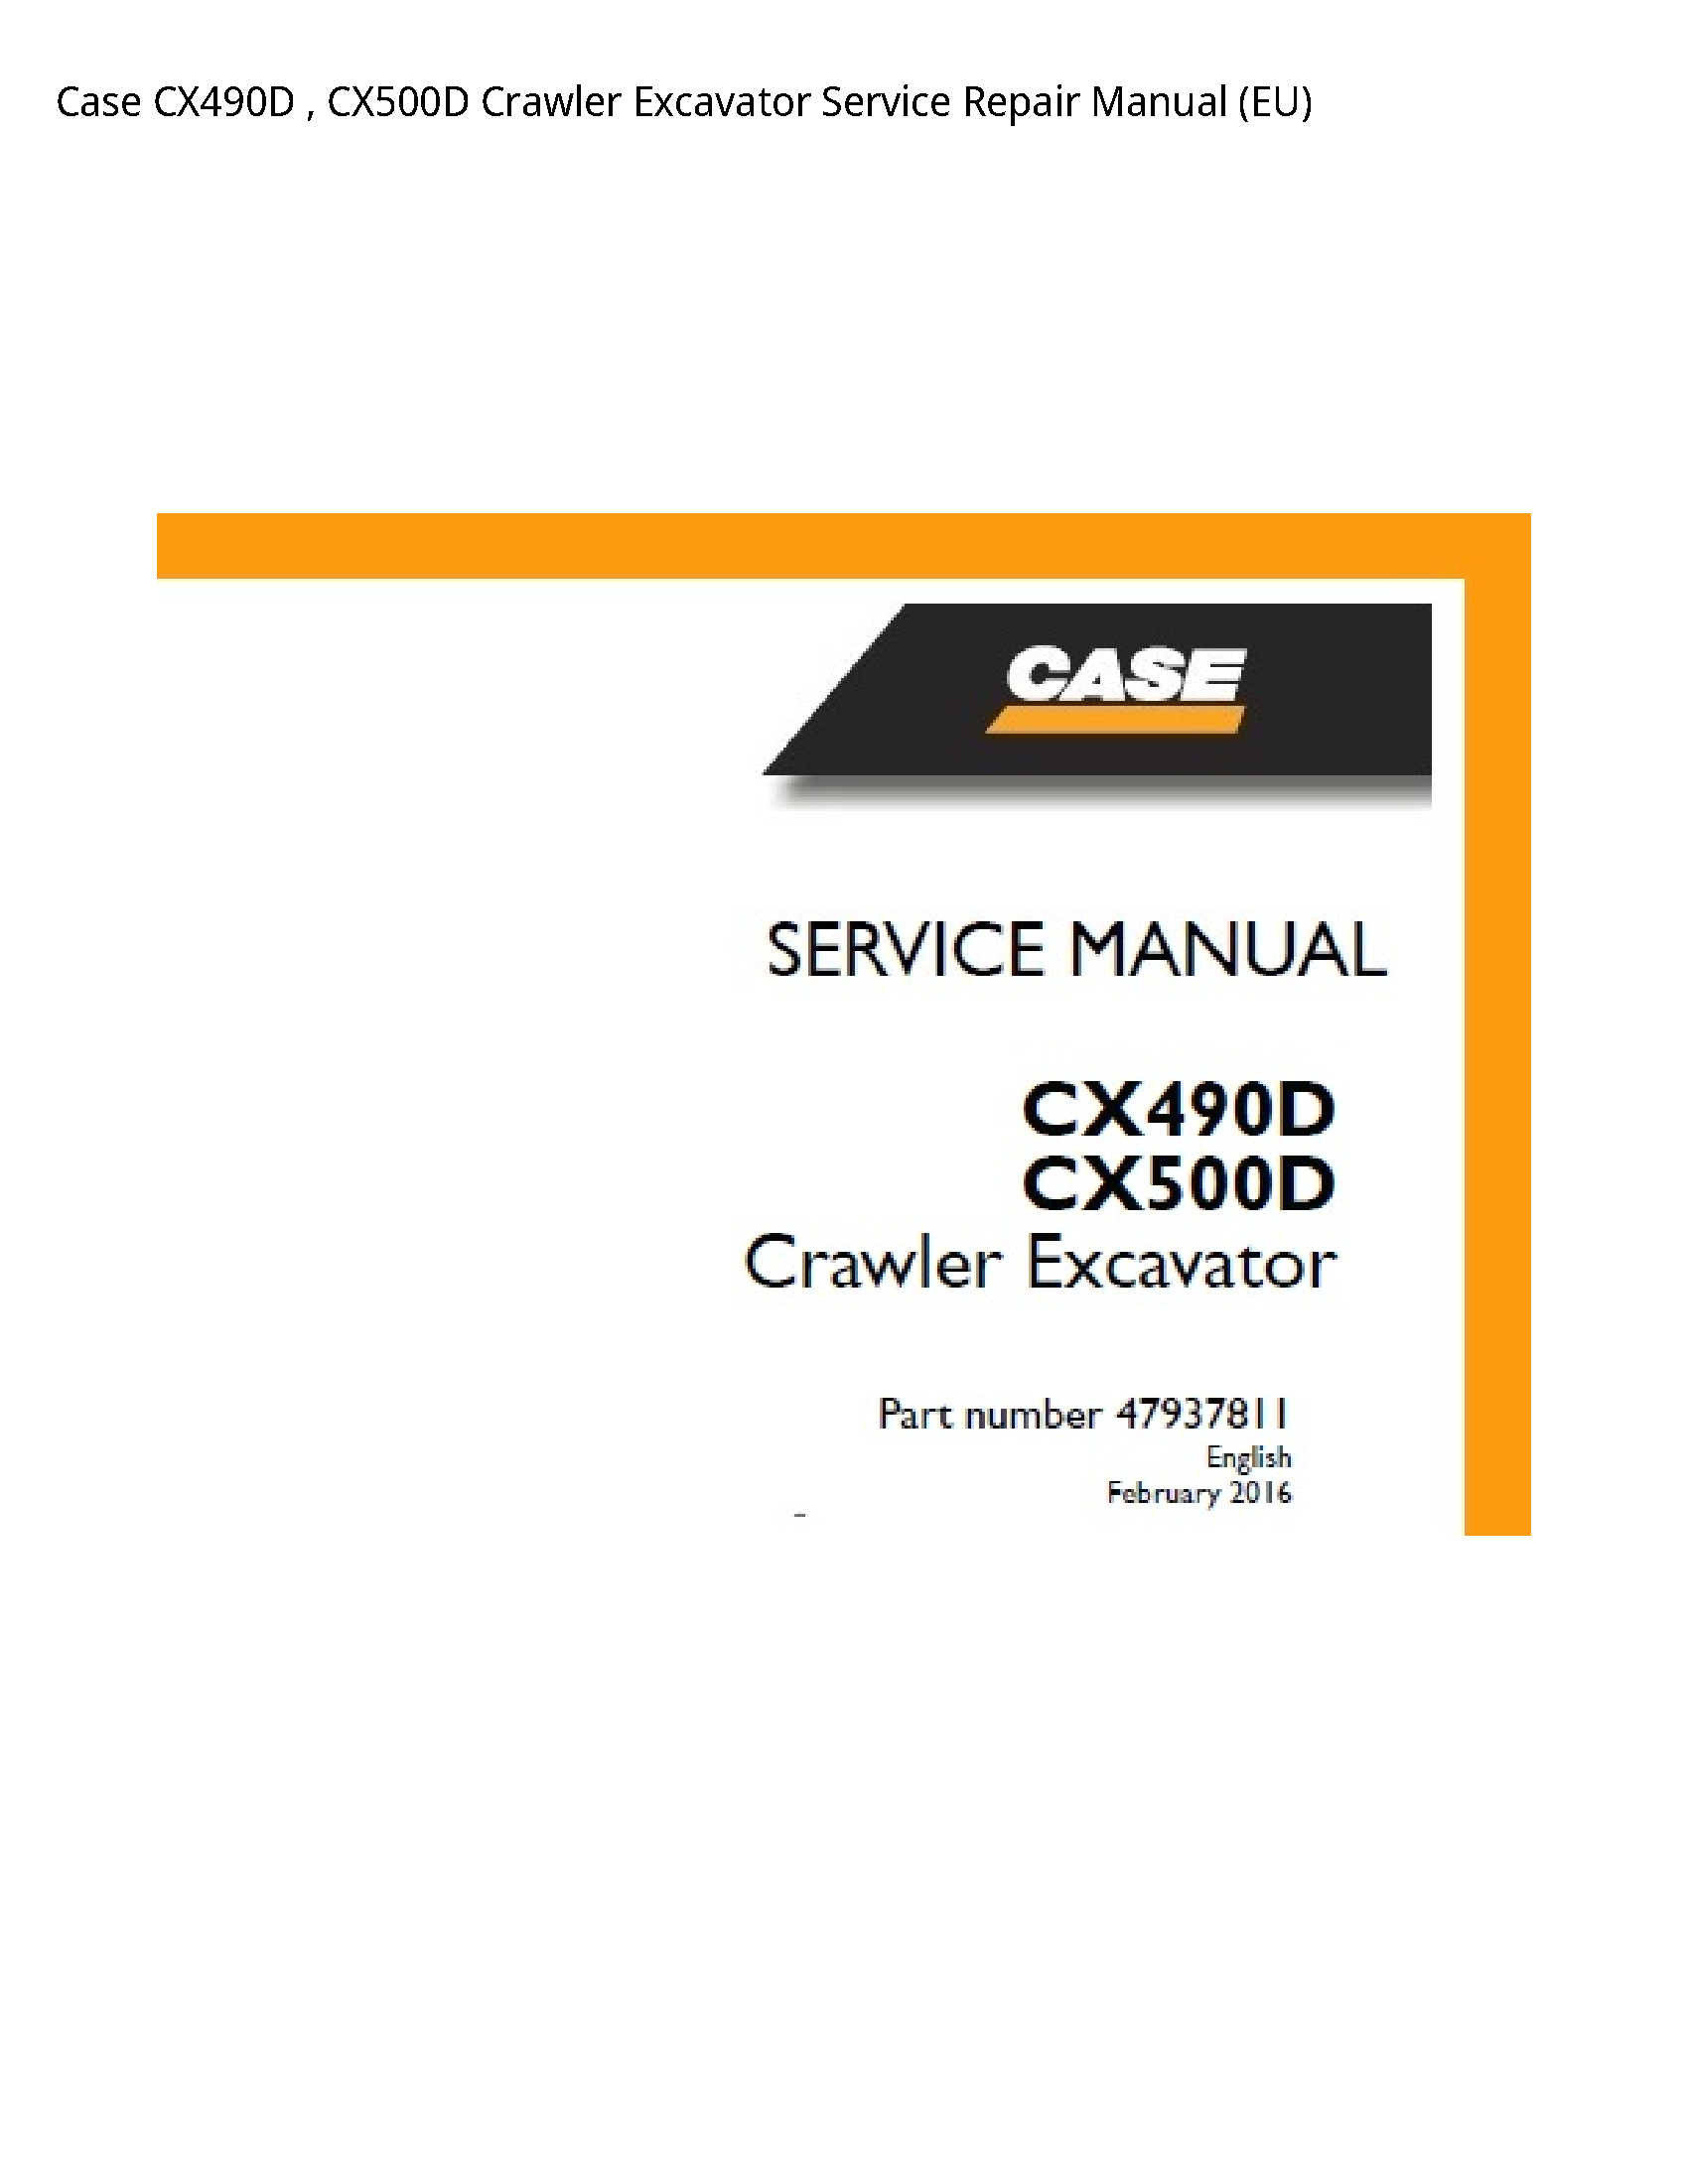 Case/Case IH CX490D Crawler Excavator manual